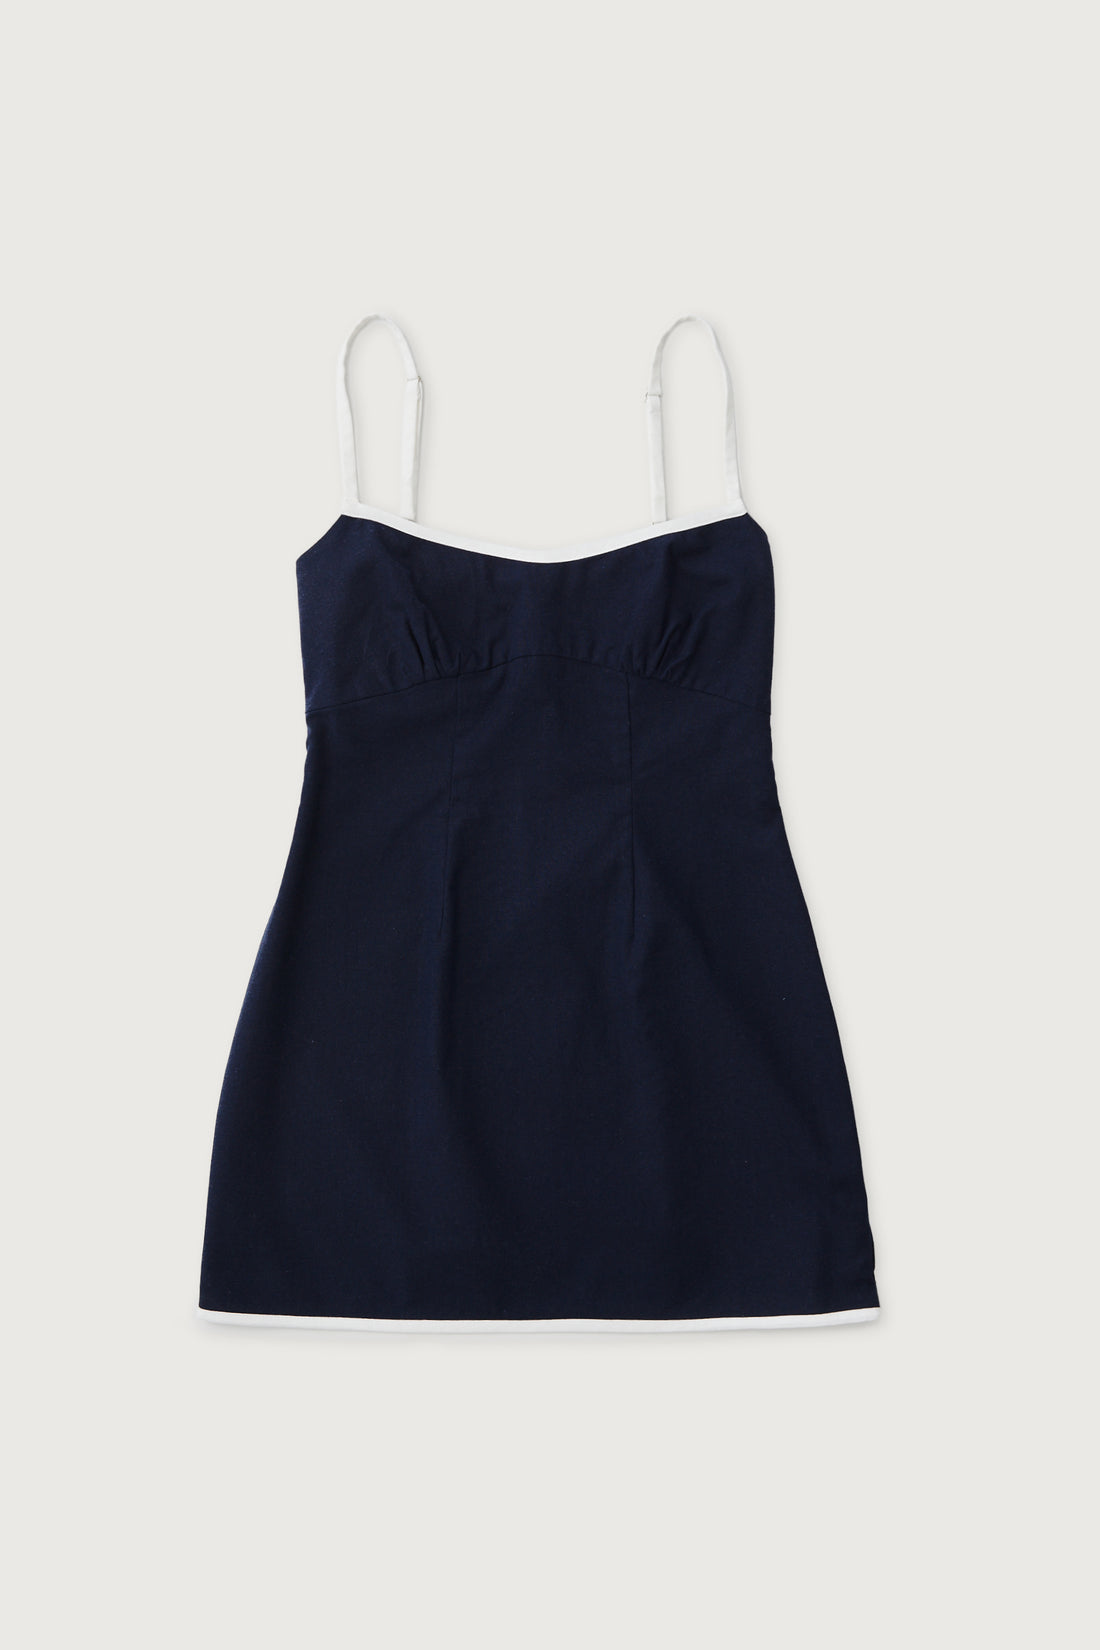 Linen Contrast Mini Dress + Navy - Little Puffy